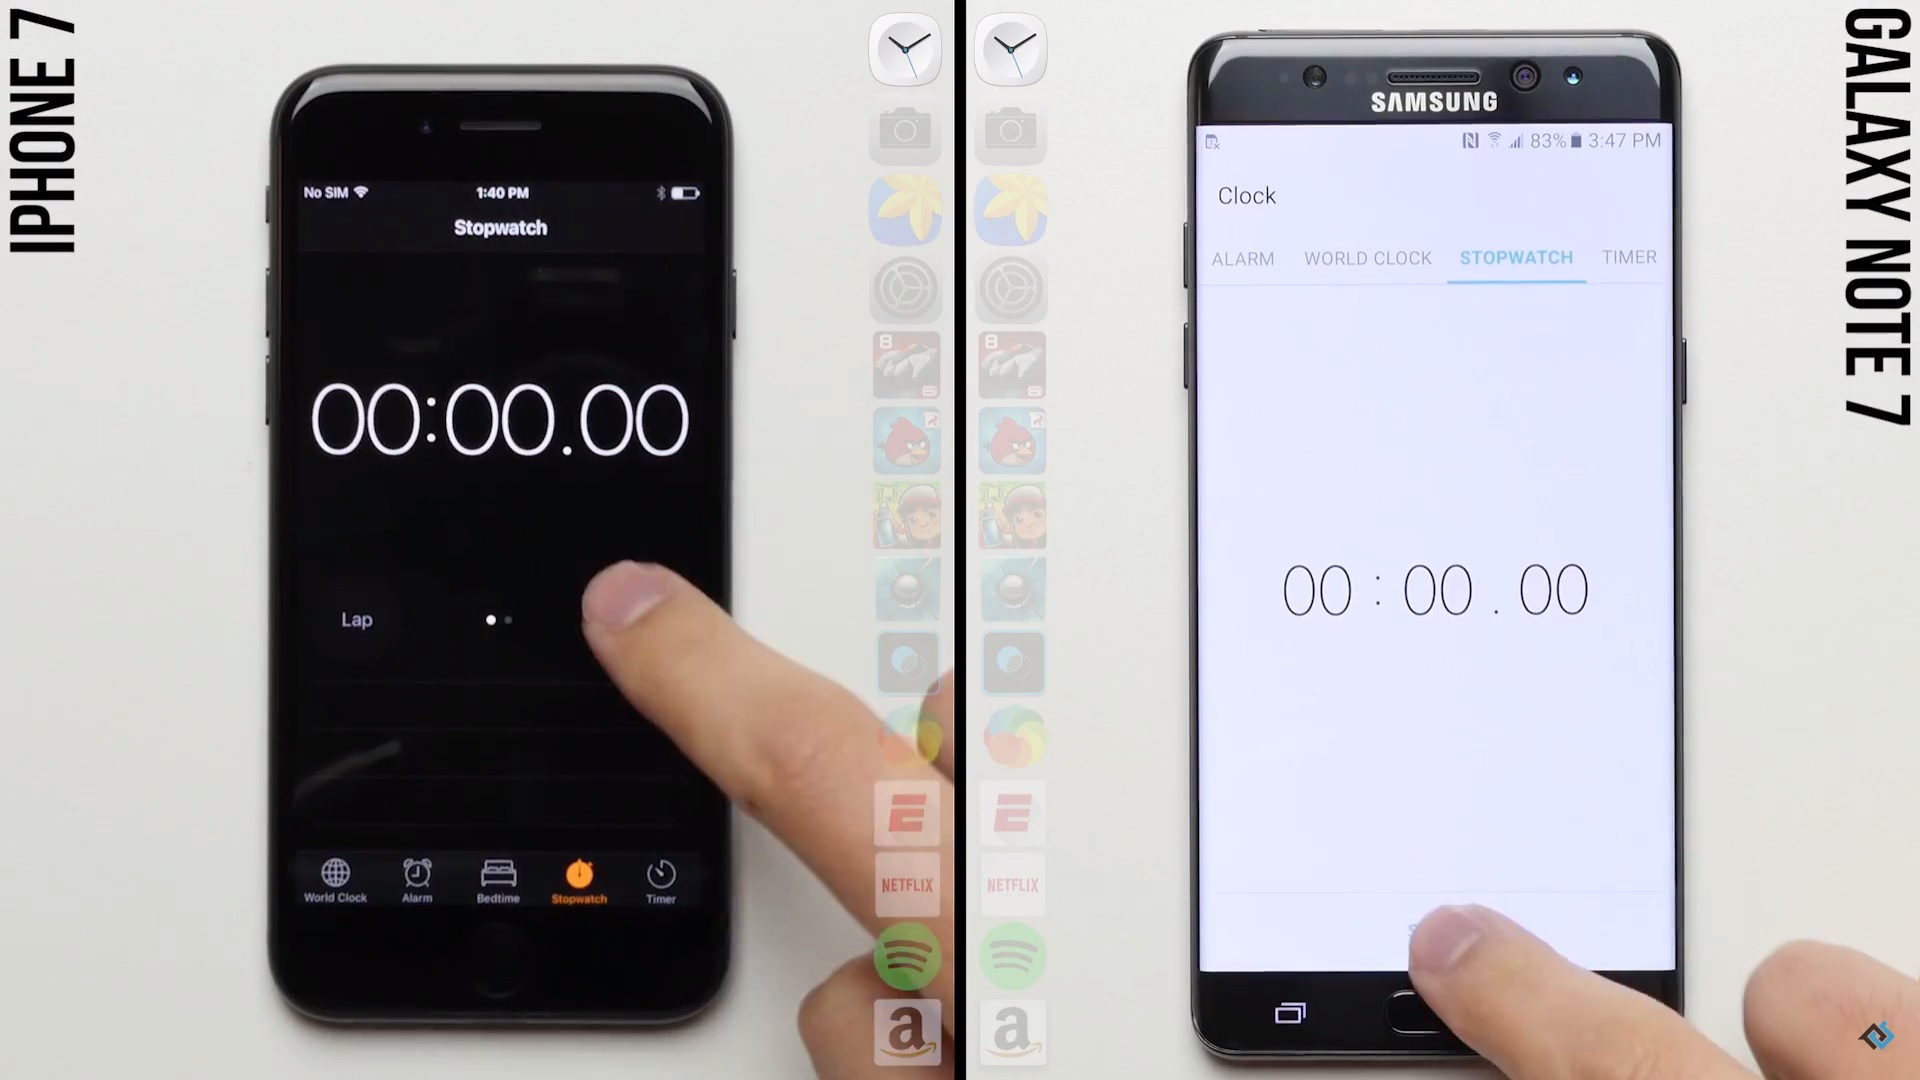 ศึกประลองความเร็ว !! ชมคลิป Speed Test ระหว่าง iPhone 7 และ Samsung Galaxy Note 7 ที่ผลลัพธ์ต่างกันเท่าตัว !!